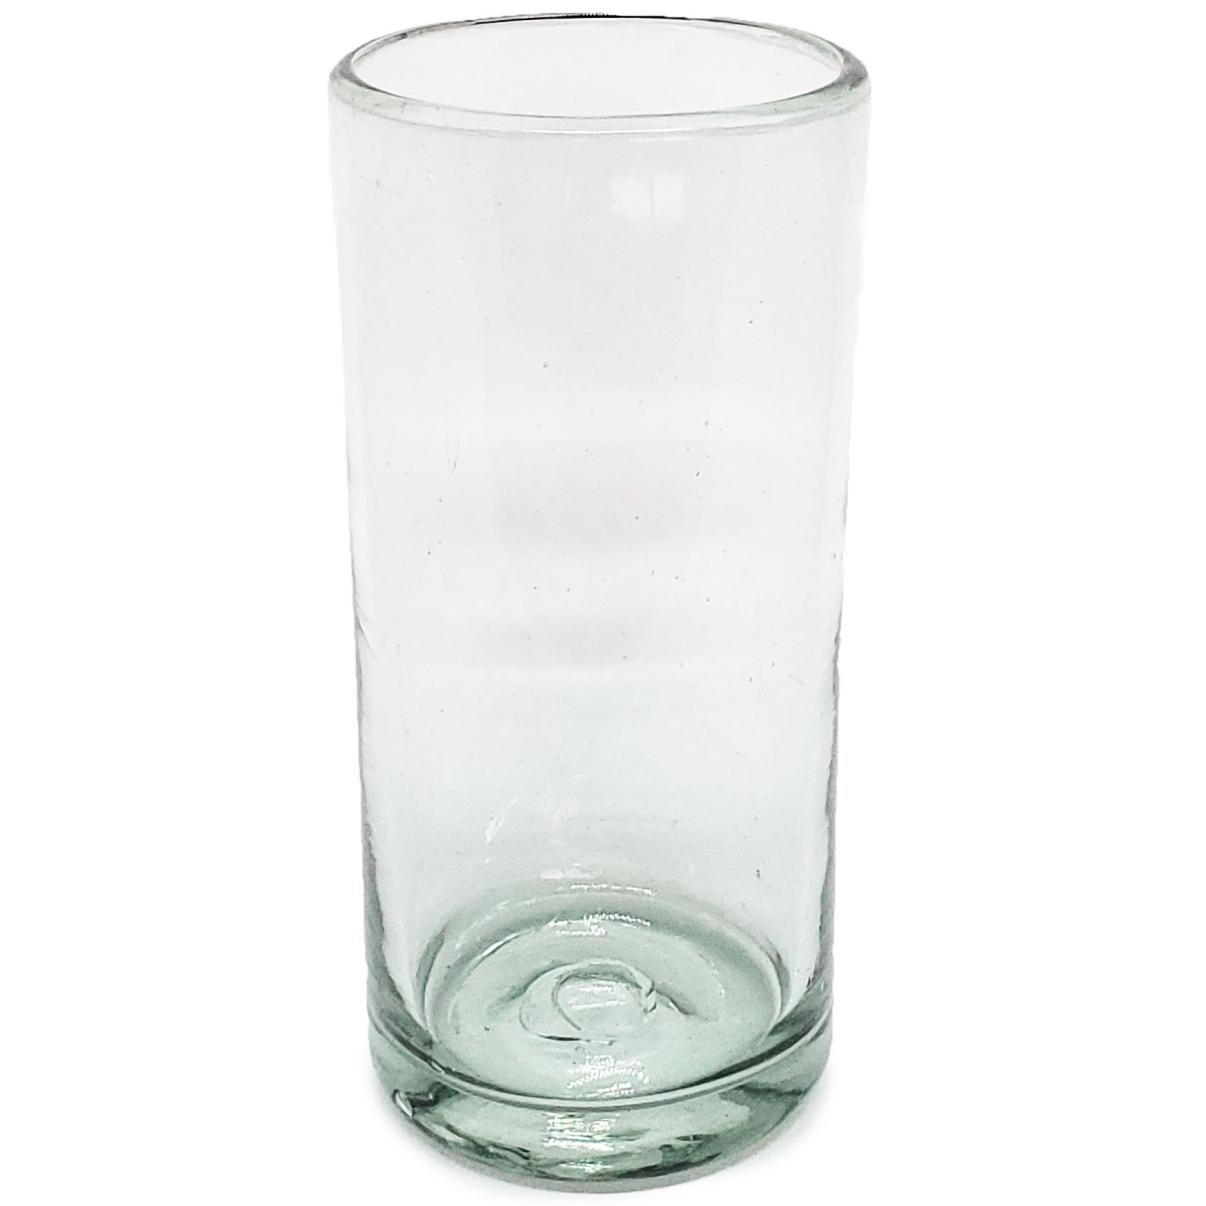 VIDRIO SOPLADO al Mayoreo / vasos Jumbo transparentes / ste clsico juego de vasos jumbo est hecho con vidrio reciclado. Contiene pequeas burbujas atrapadas en el vaso.